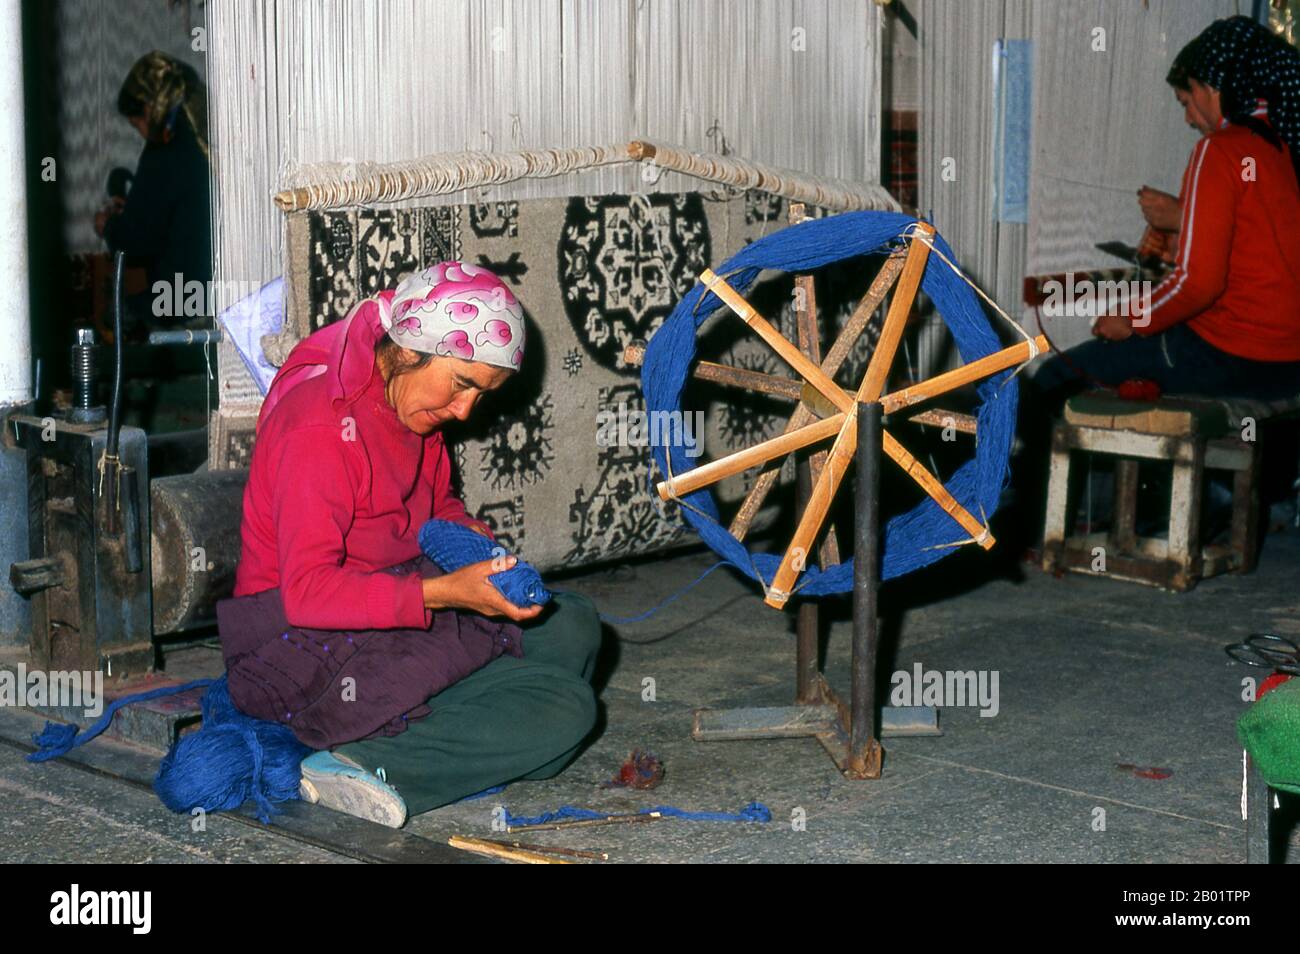 Cina: Tessitori di tappeti uiguri, fabbrica di tappeti, Khotan, Xinjiang. Khotan traccia la sua storia almeno fino al III secolo a.C., quando si dice che il figlio maggiore dell'imperatore indiano Asoka si sia insediato qui. Era di grande importanza sulla via della seta, e si dice che sia stato il primo posto fuori dalla Cina ad aver coltivato seta. Si trova a cavallo dei fiumi Karakash o «Giada Nera» e Yurungkash o «Giada Bianca», che qui si uniscono per formare il Khotan Darya, ed è famoso per la sua giada da oltre due millenni. Foto Stock